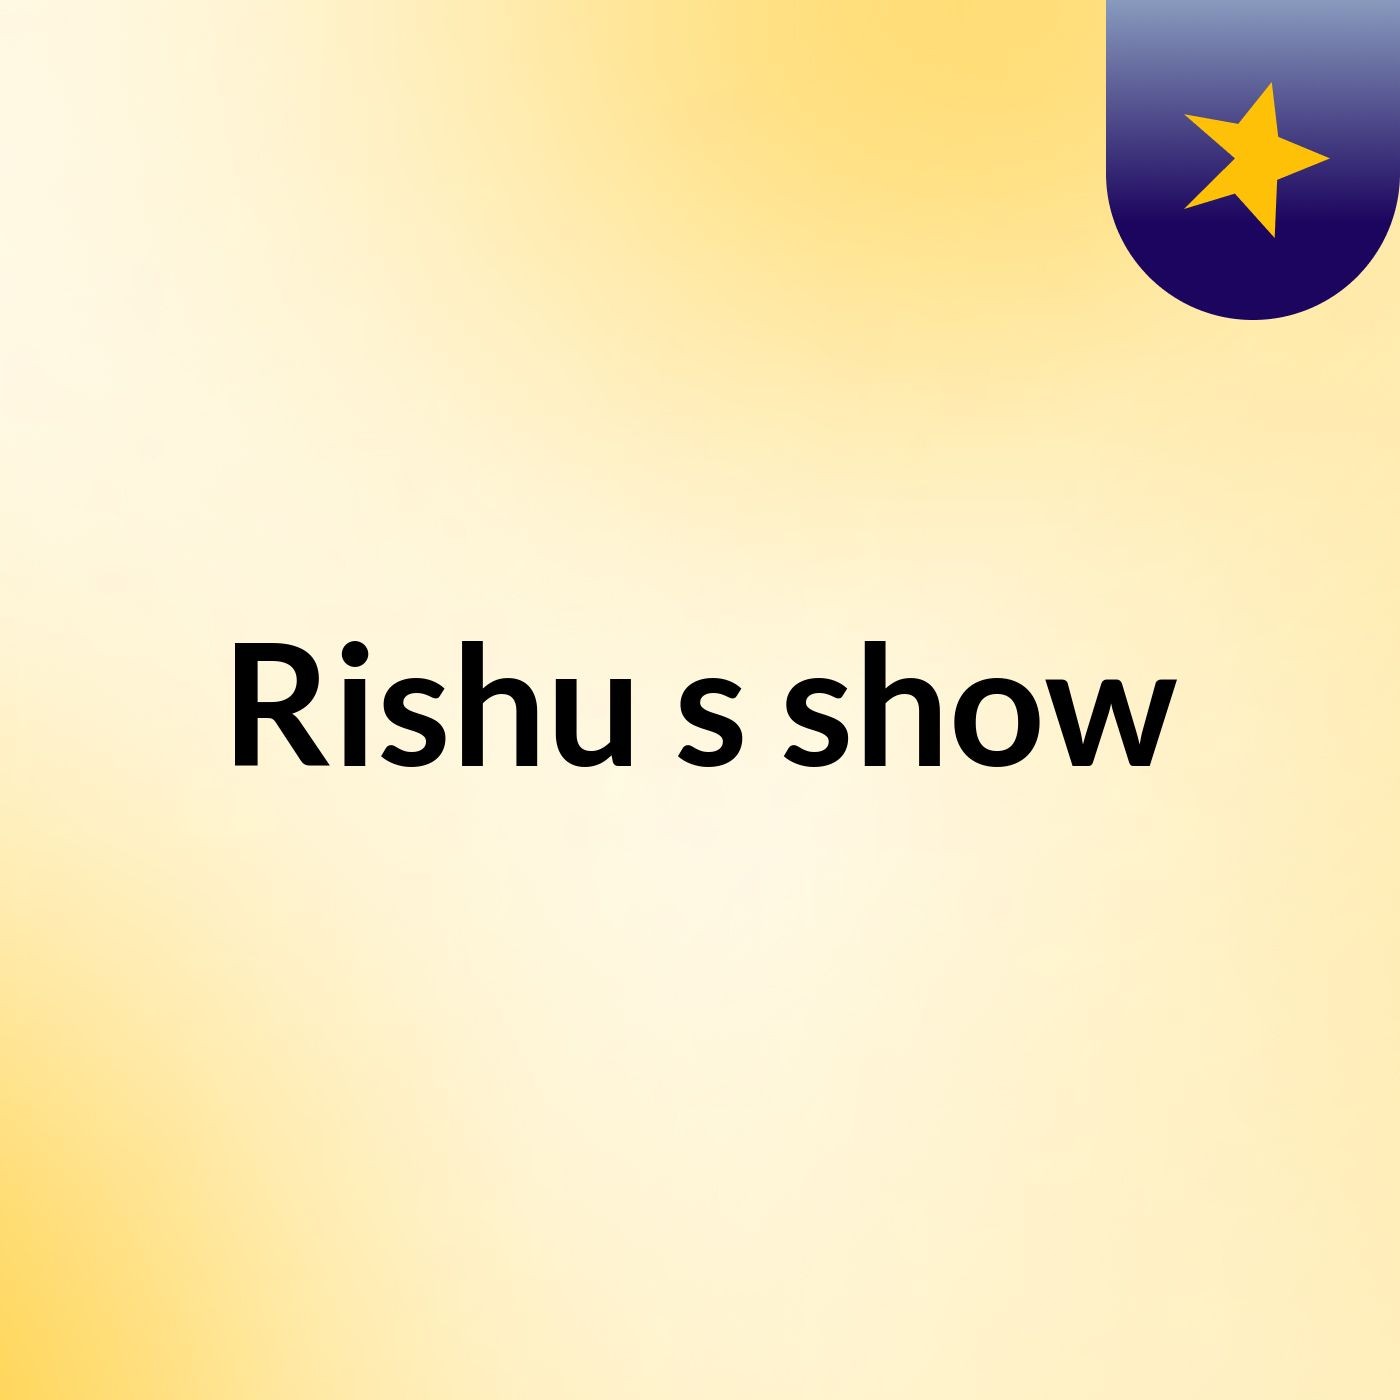 Rishu's show